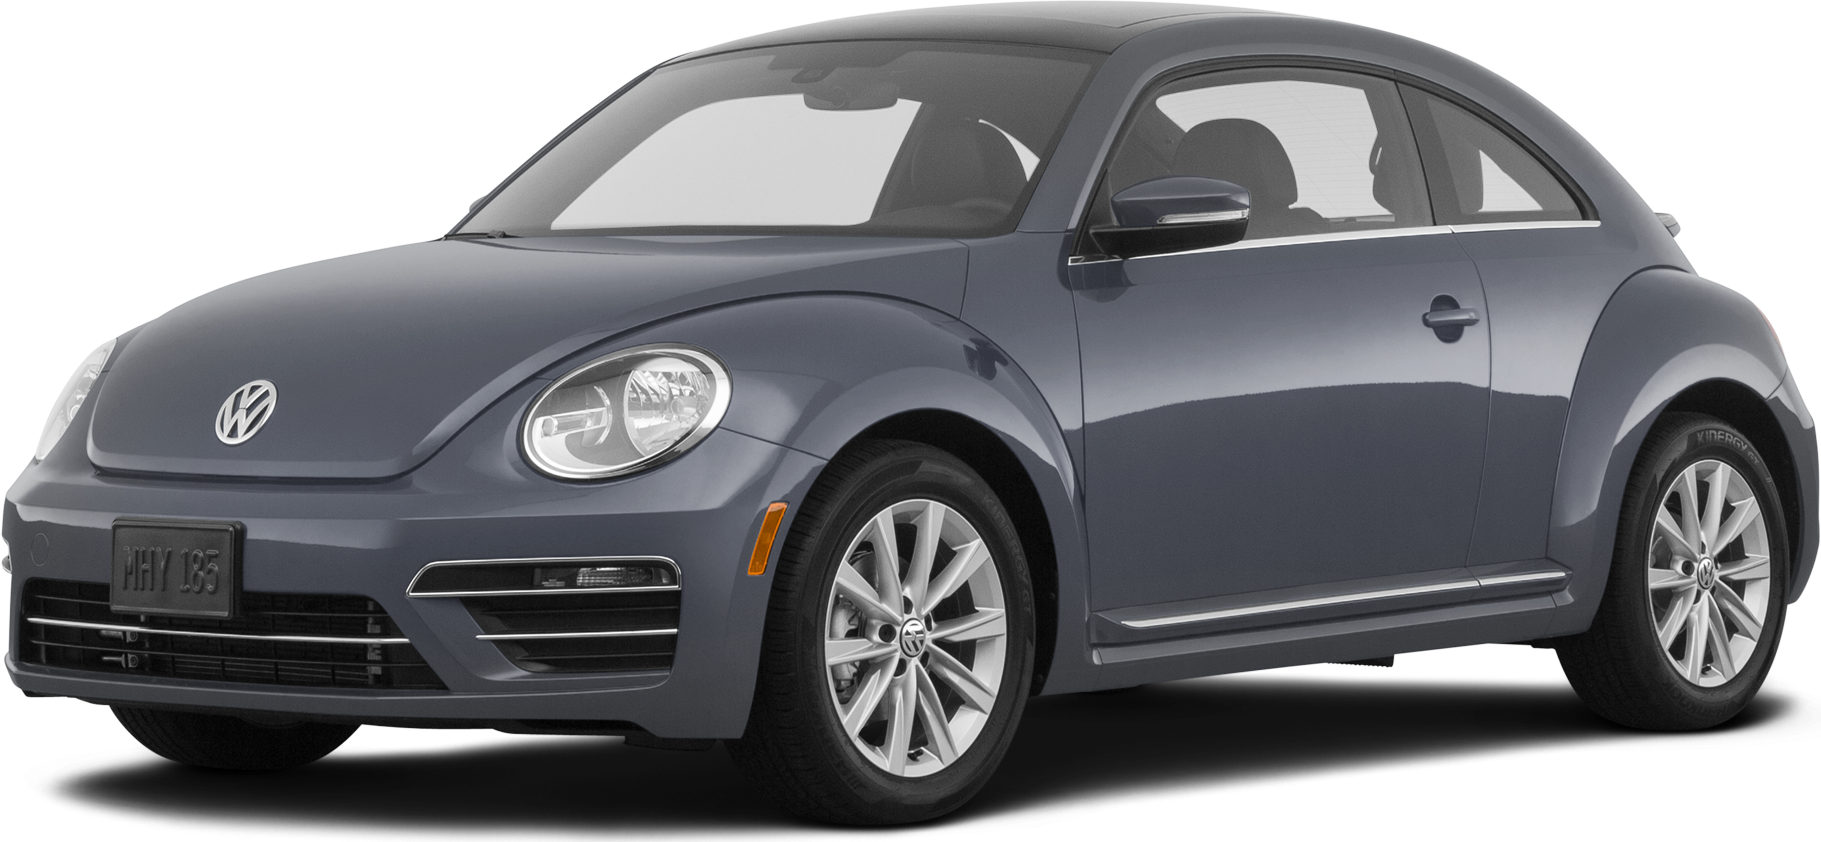 2019 Volkswagen Beetle Price, Value, Ratings & Reviews